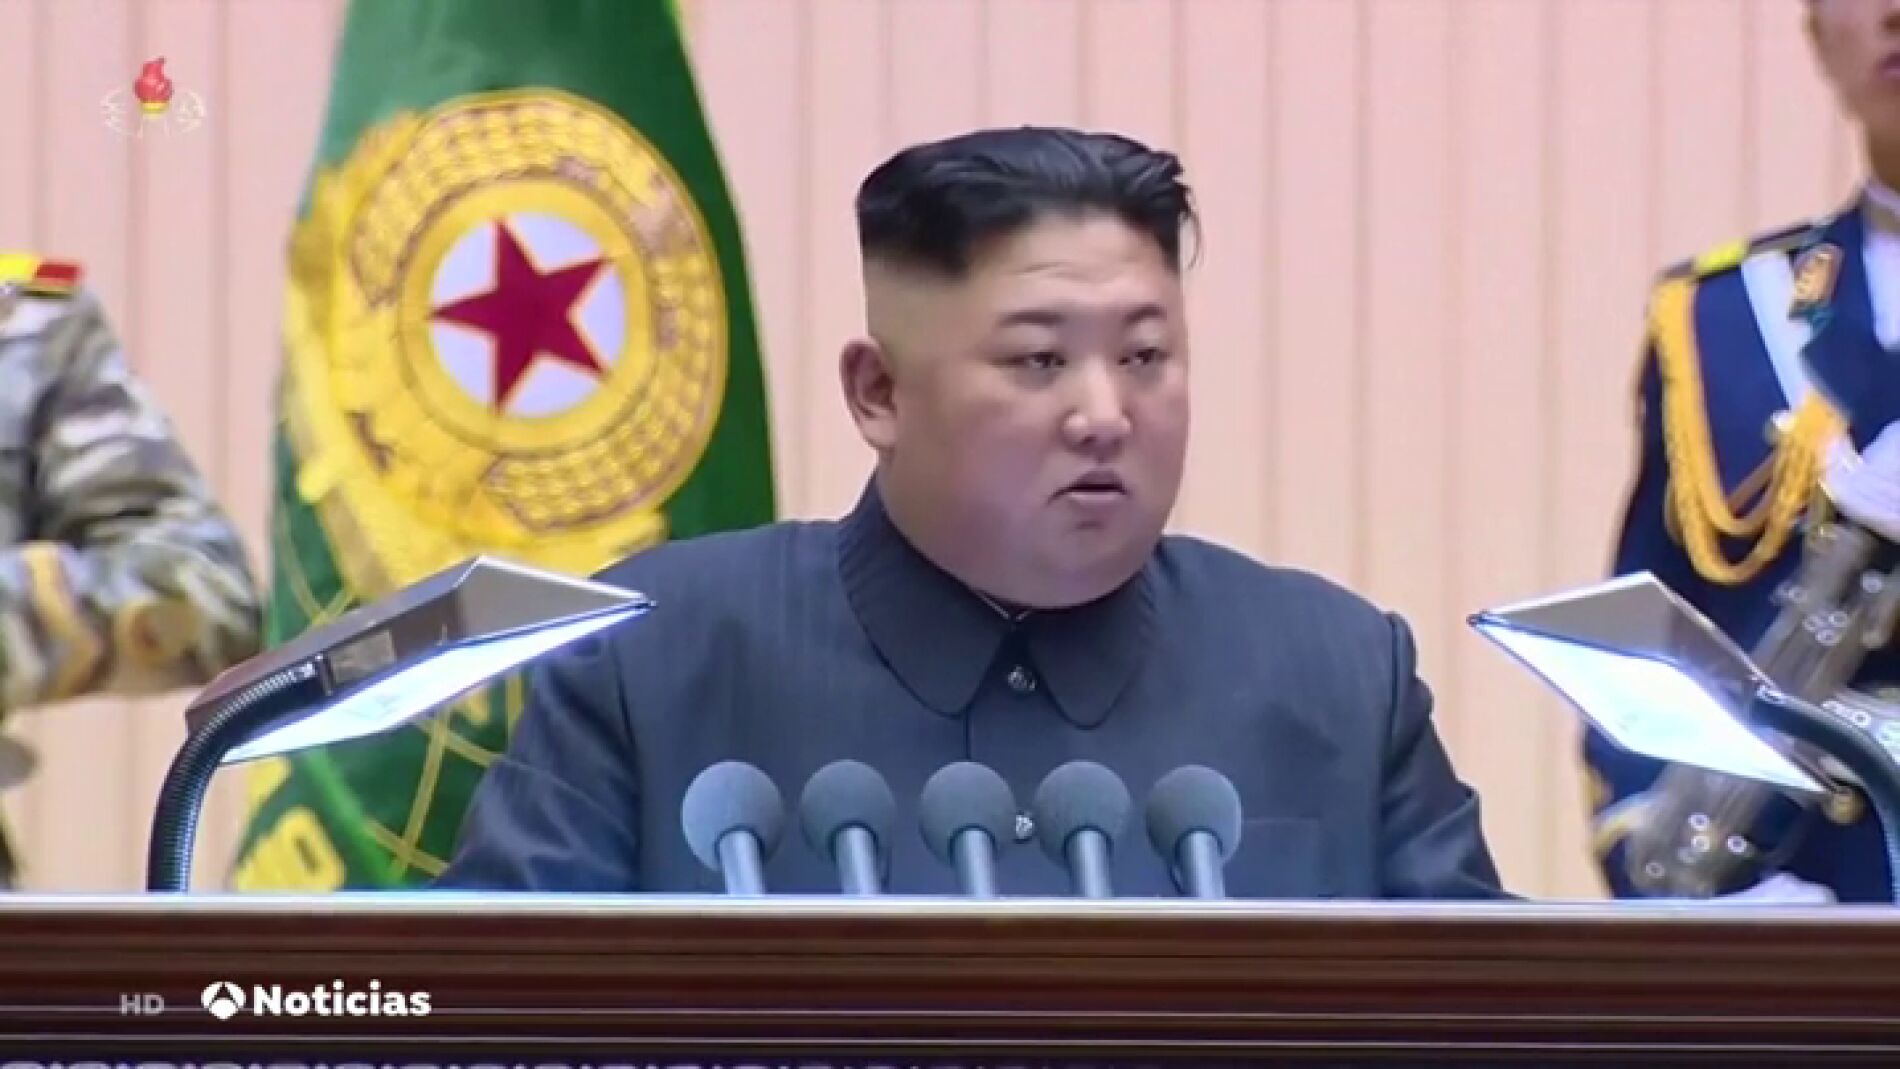 Corea del Norte destruye oficina de relaciones con Corea del Sur  El Mundo   DW  16062020